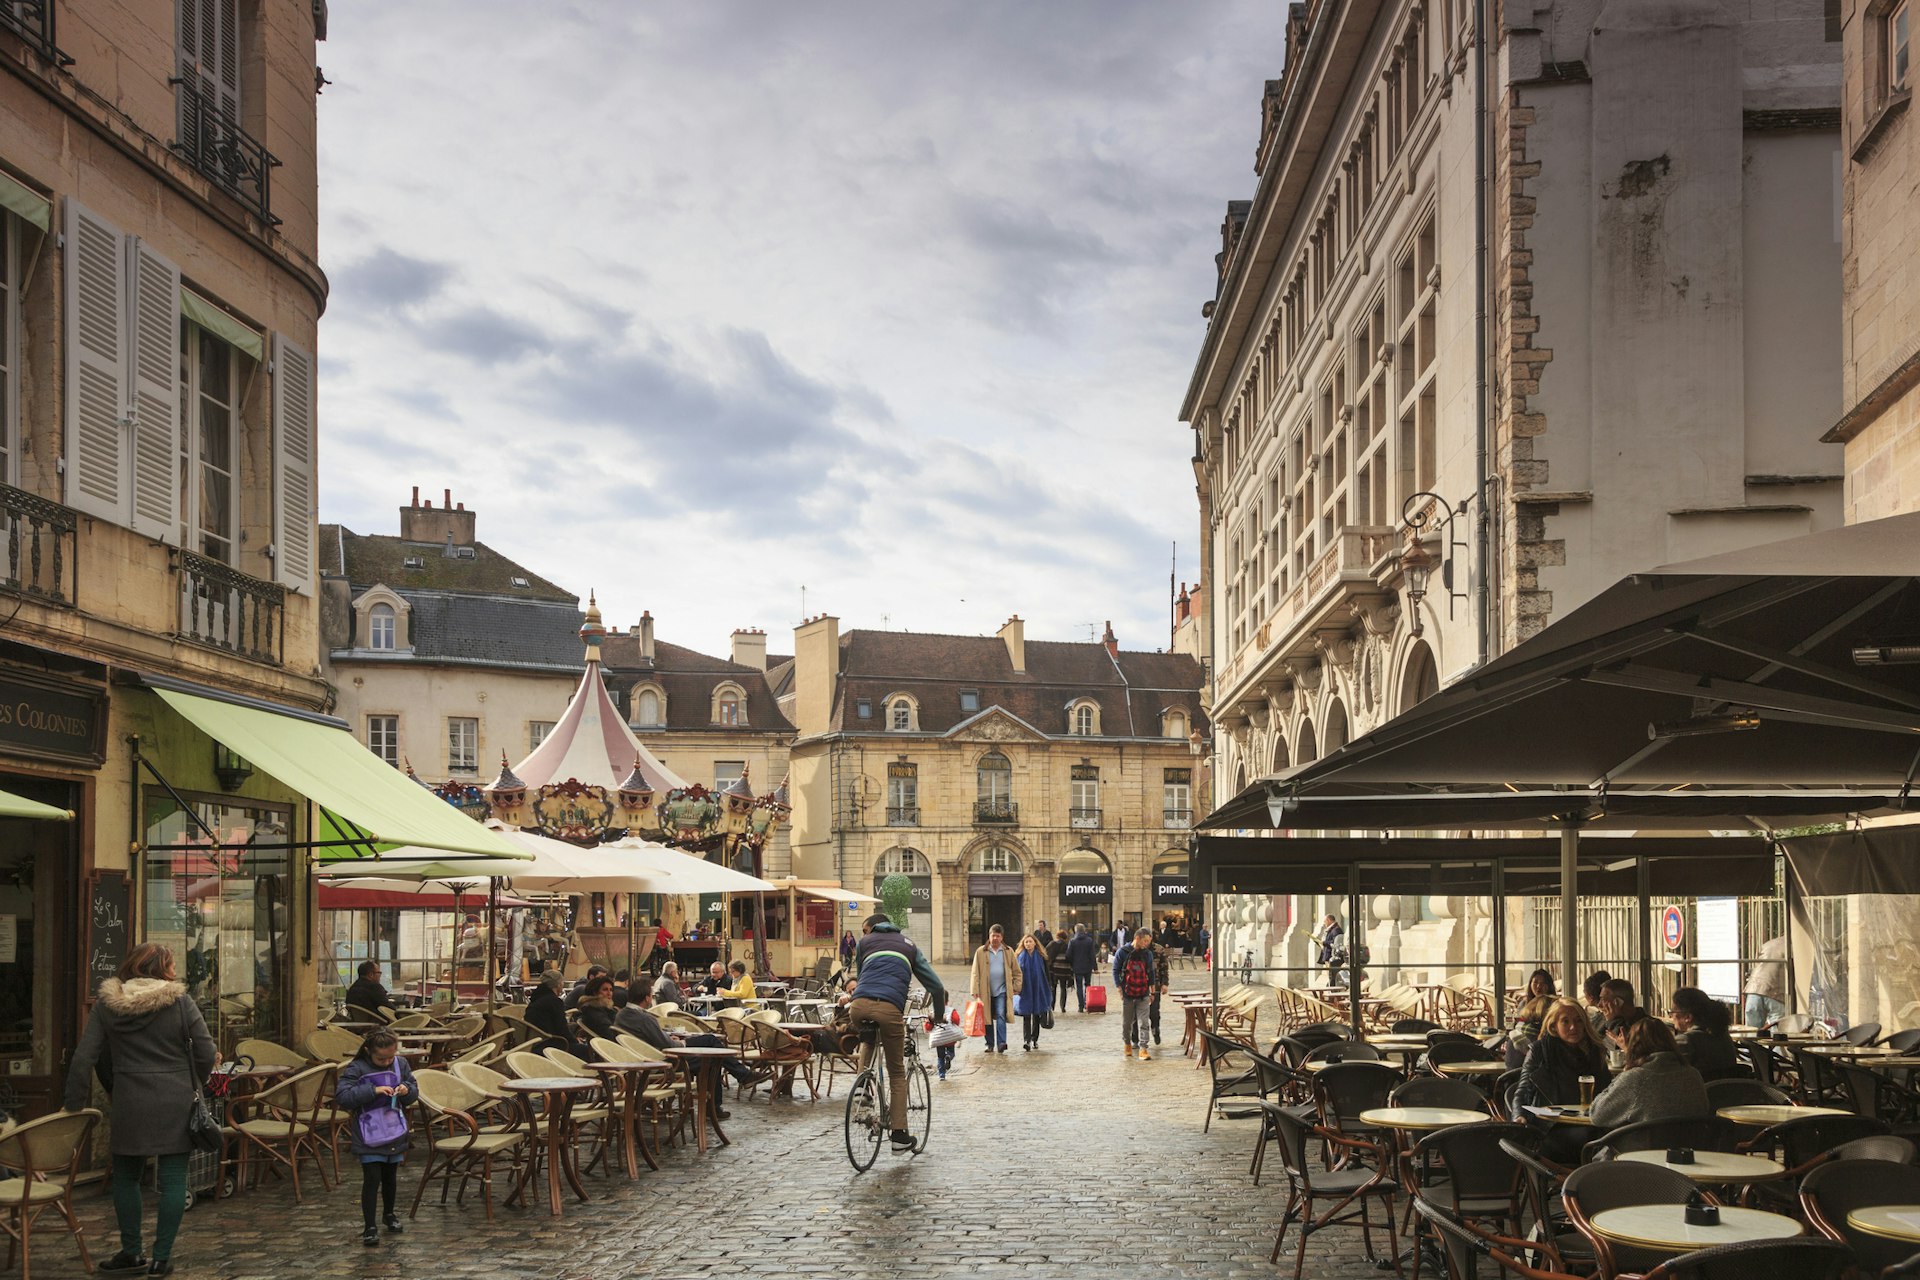 Bustling square in Dijon France